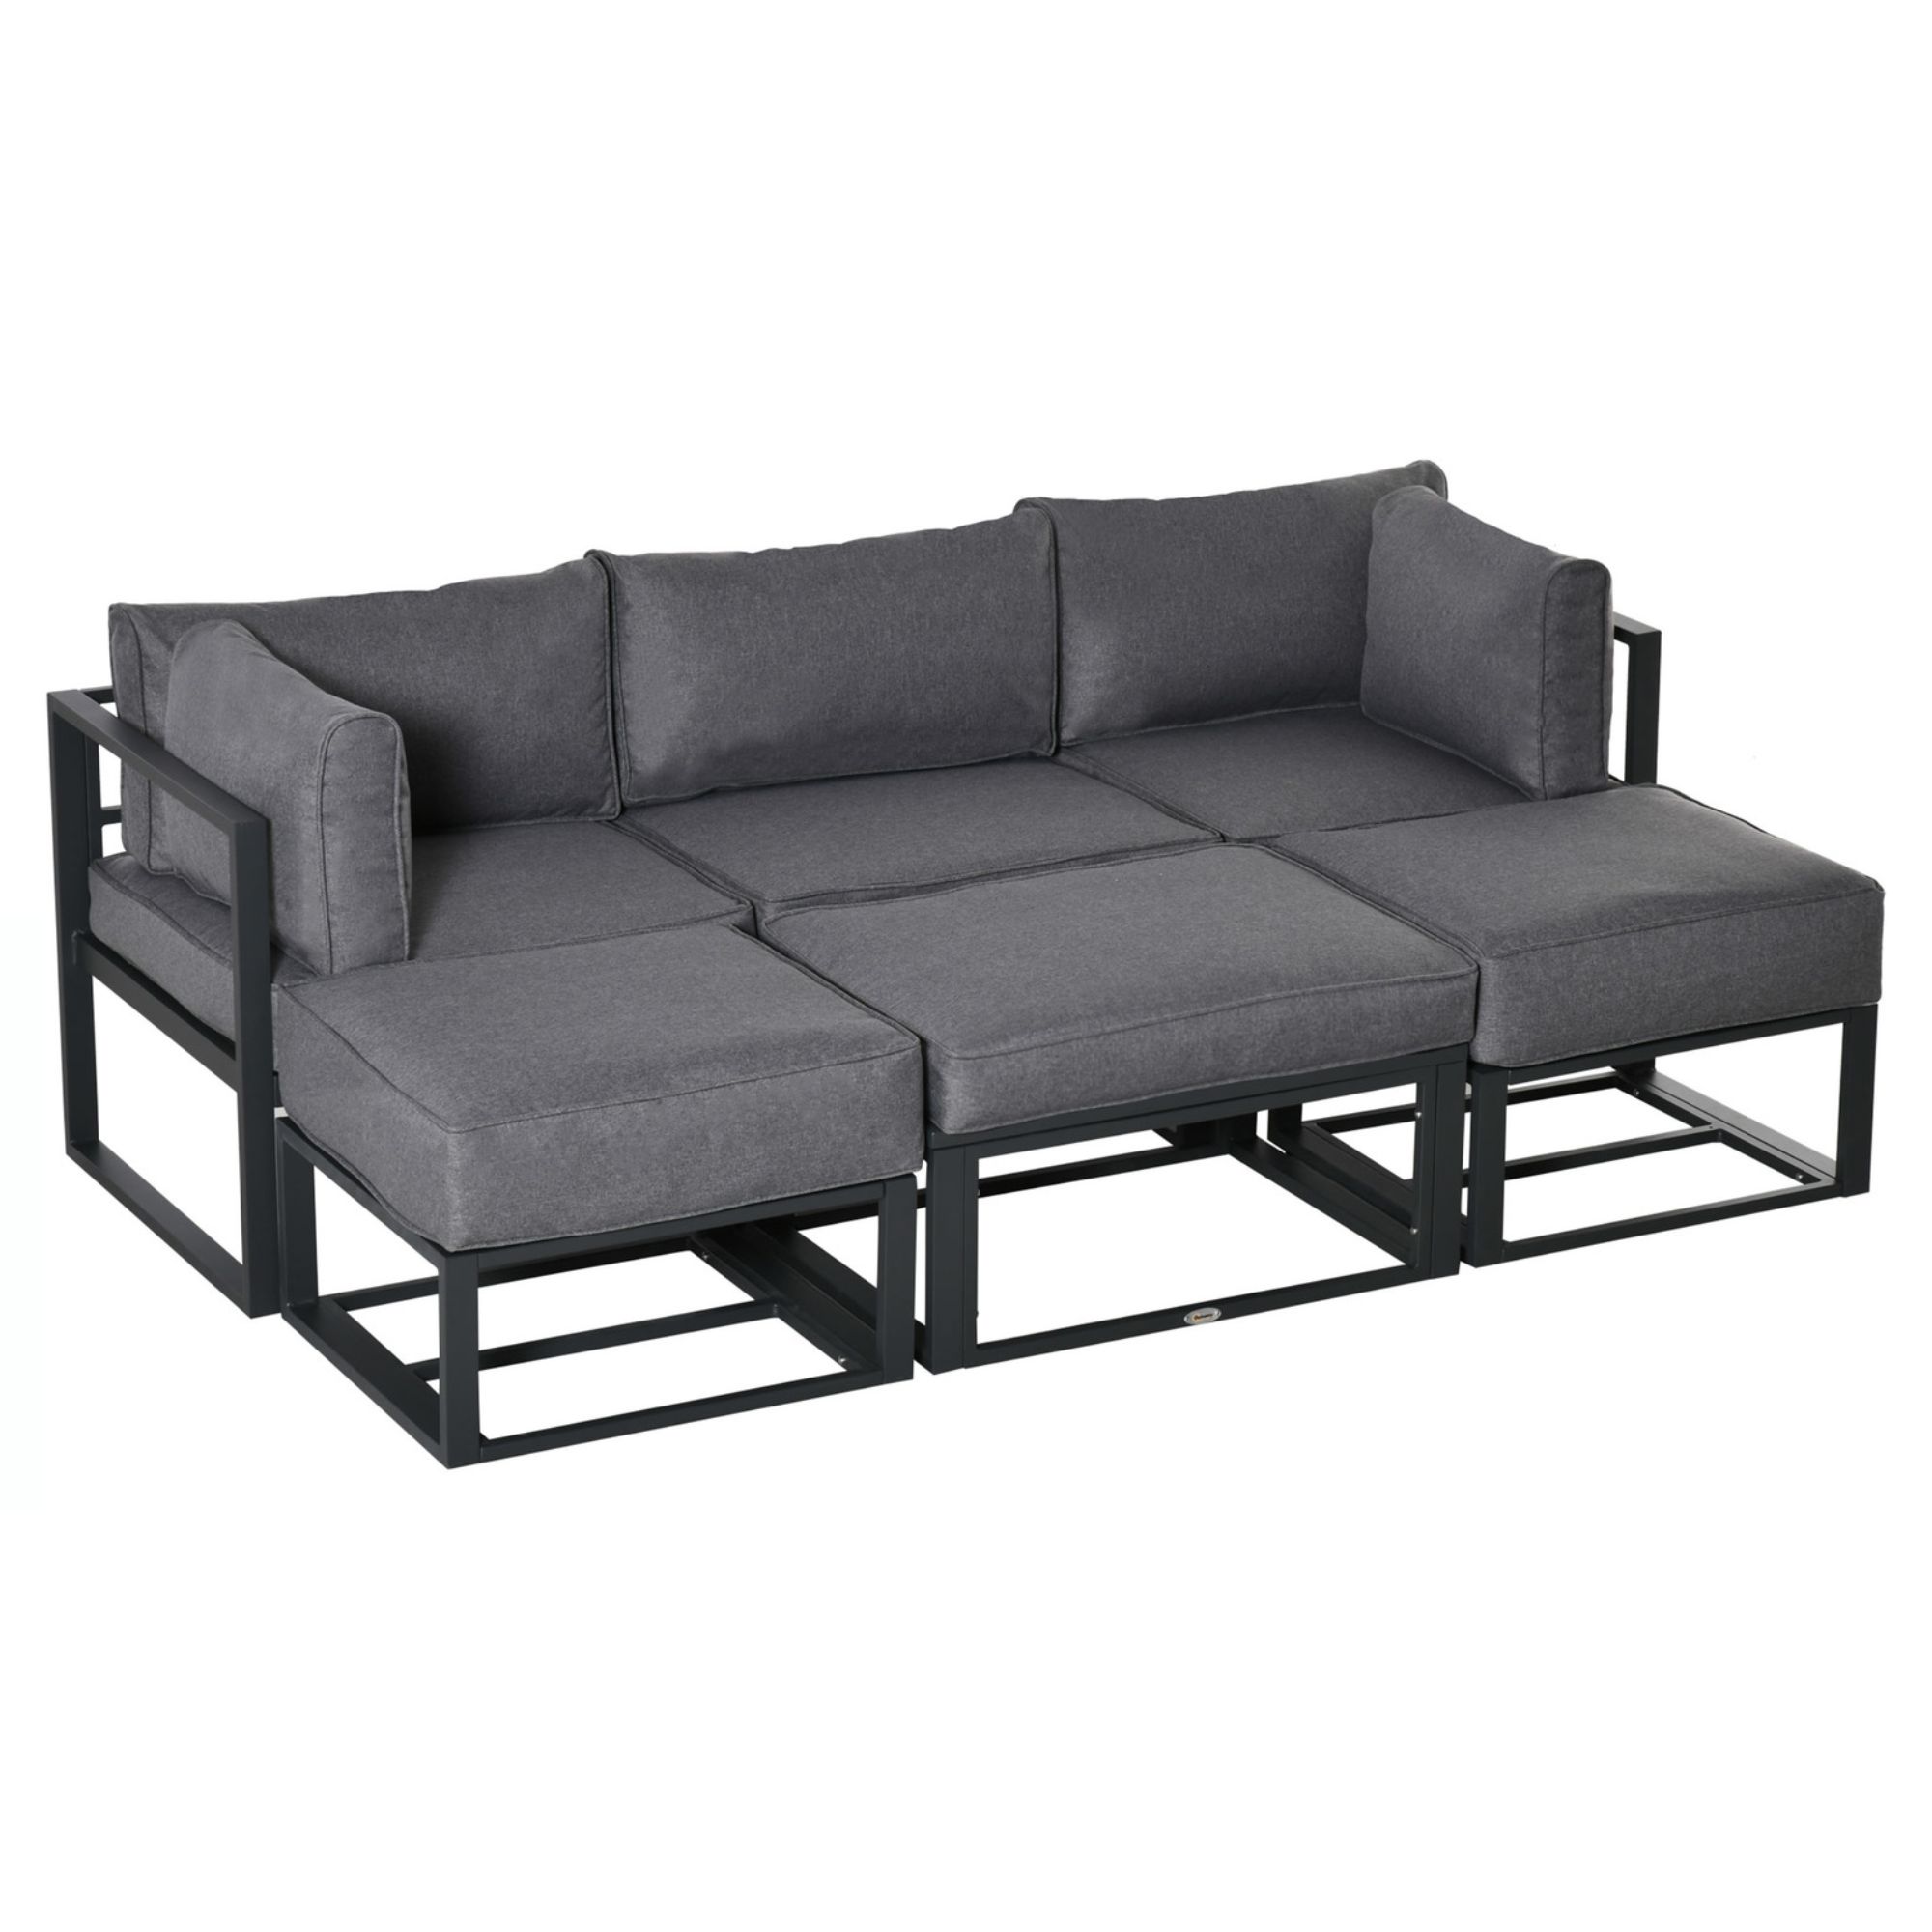 6 Piece All-Aluminium Outdoor Sectional Sofa Set - Grey